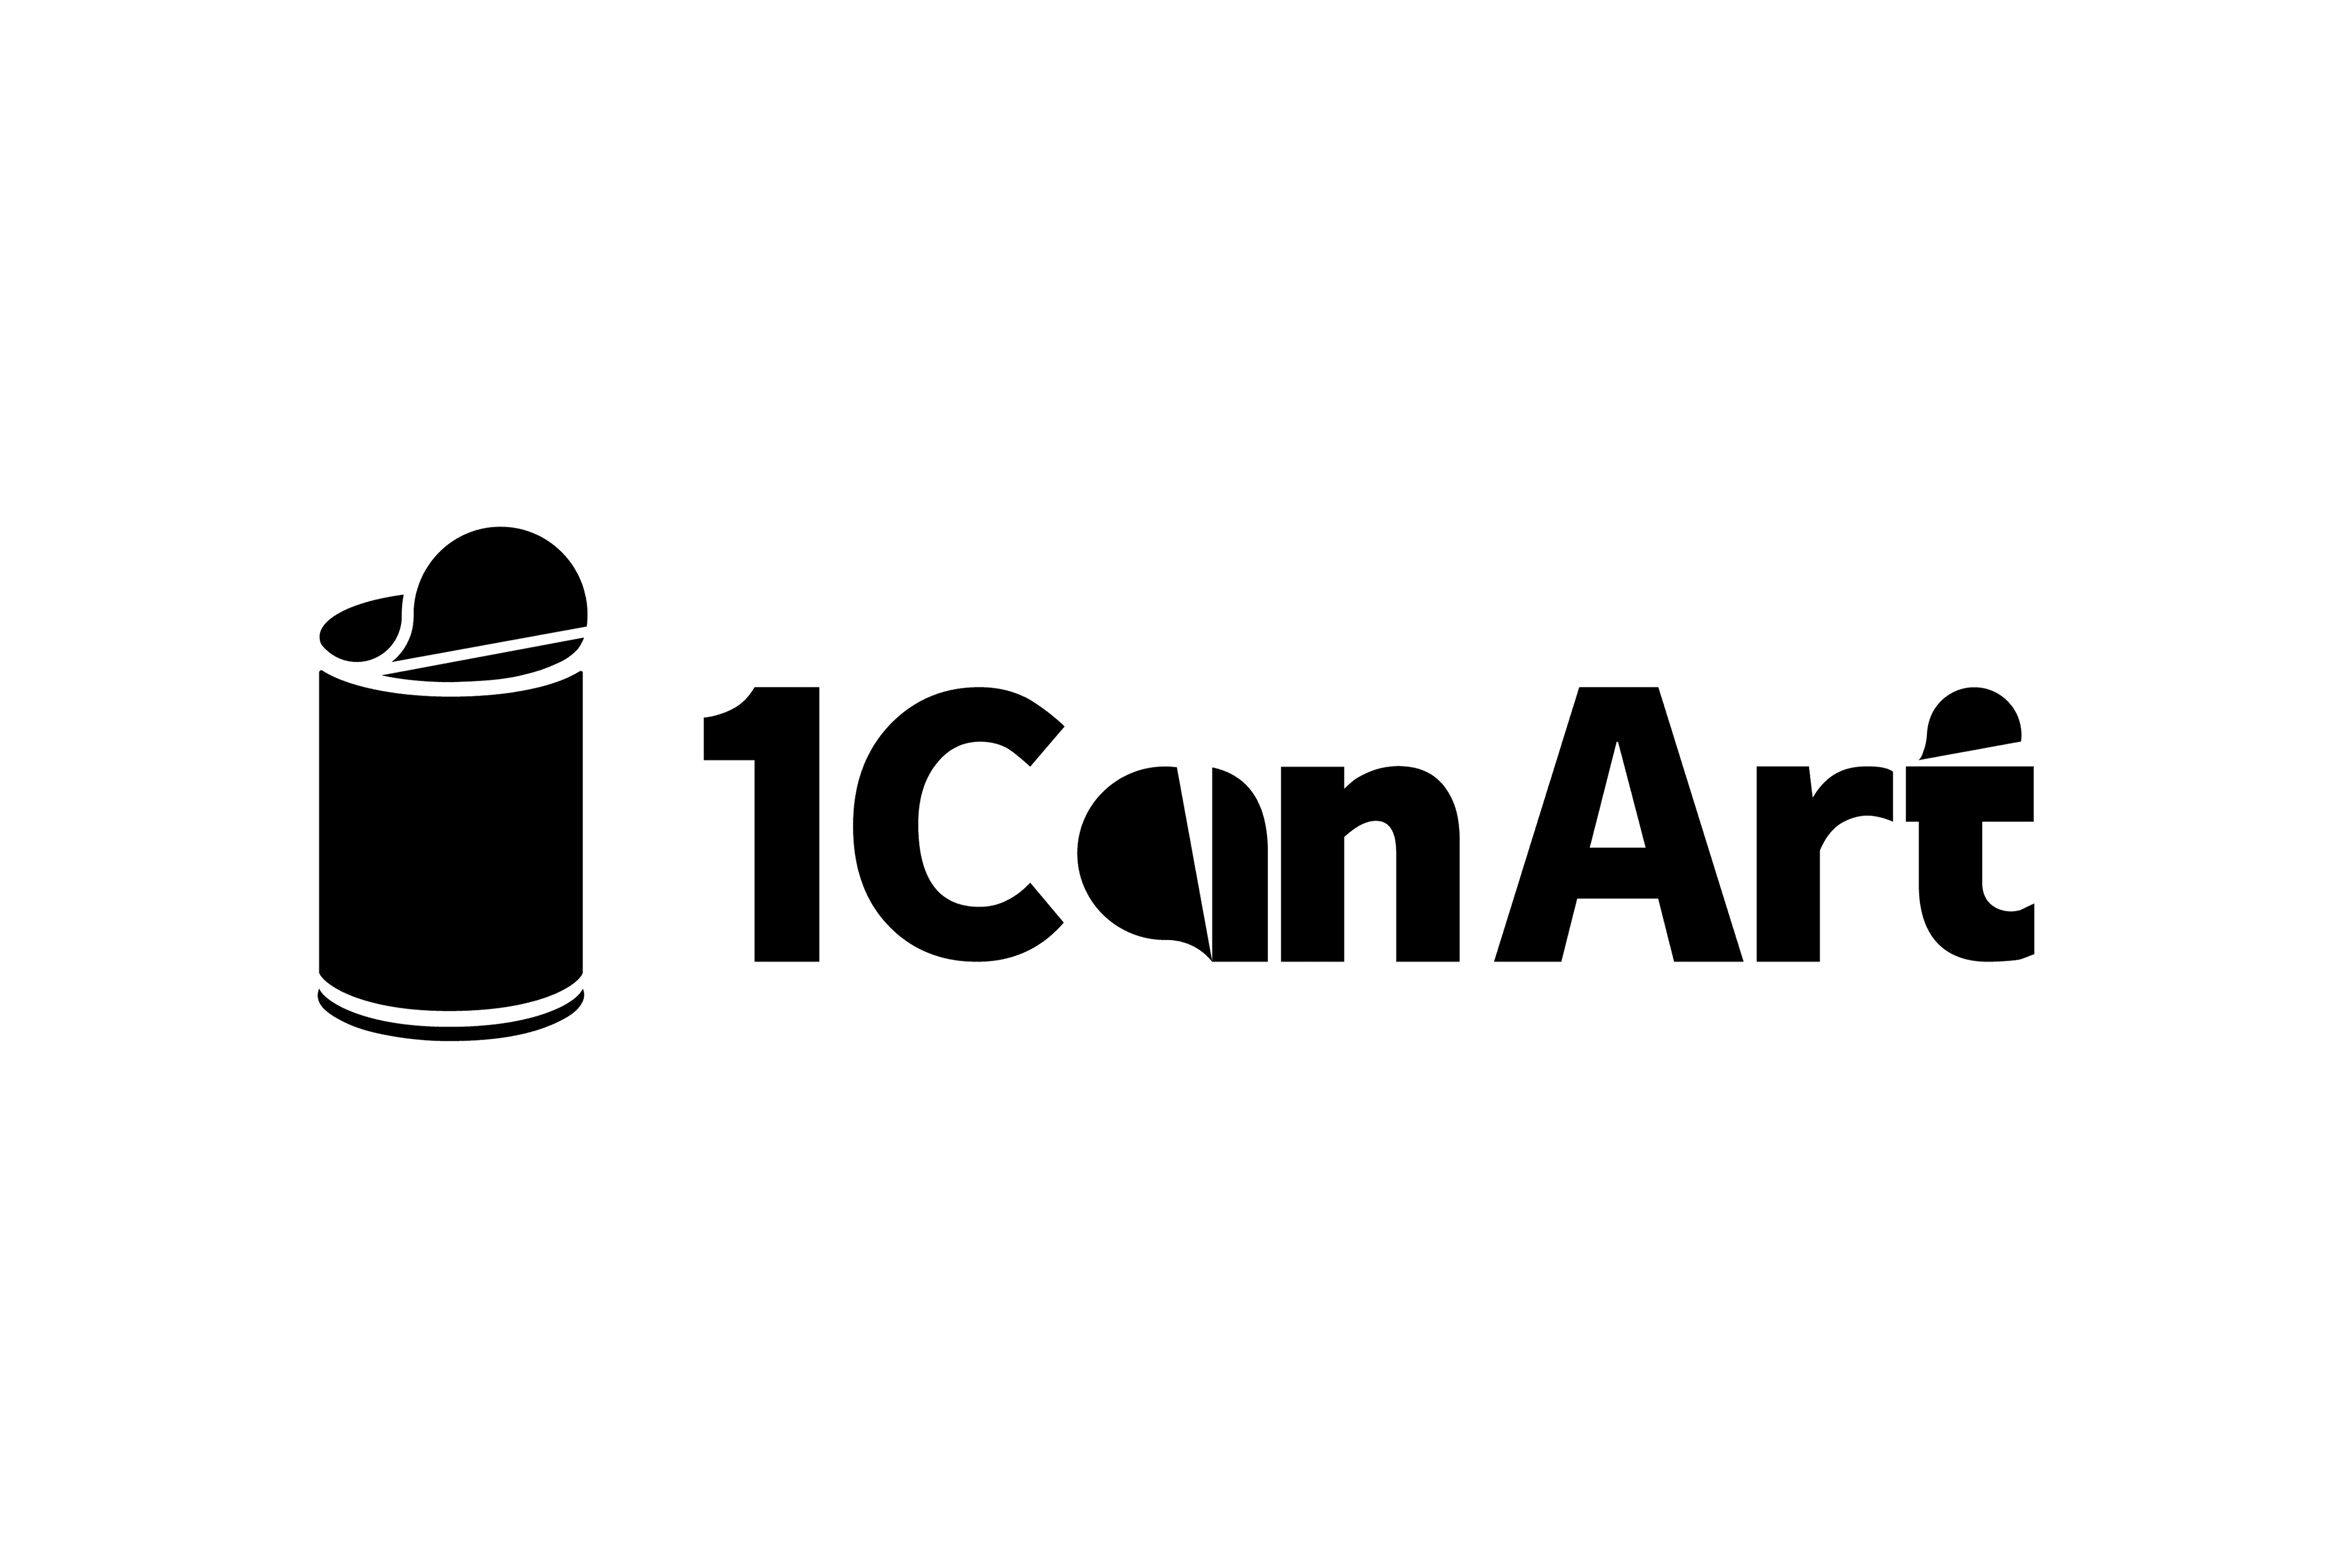 1CanArt banner